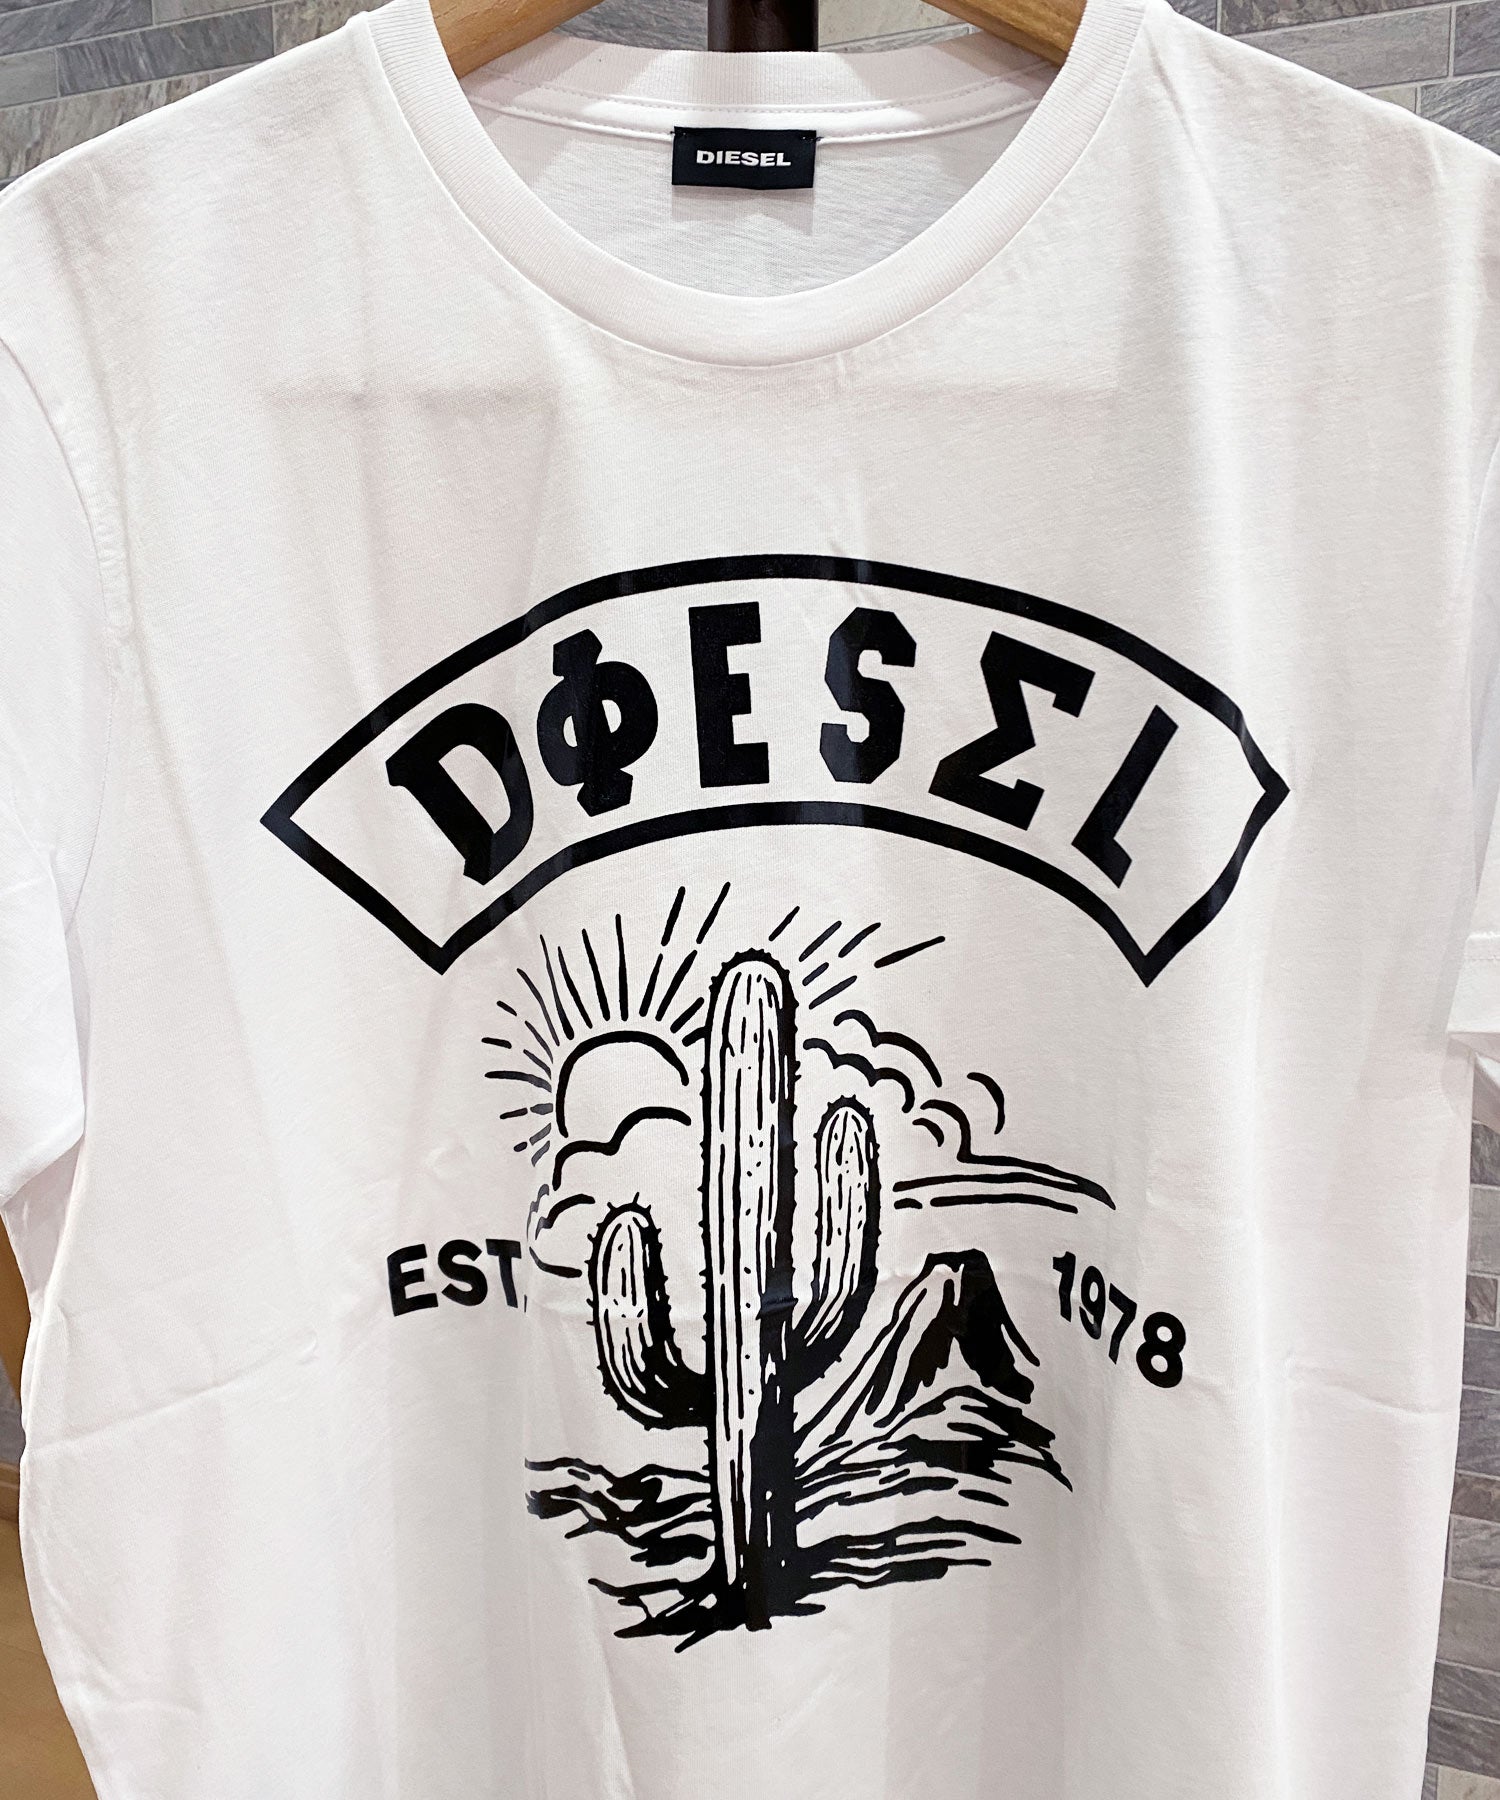 【新品未使用品】DIESEL T-DIEGO-S13 Tシャツ L ①